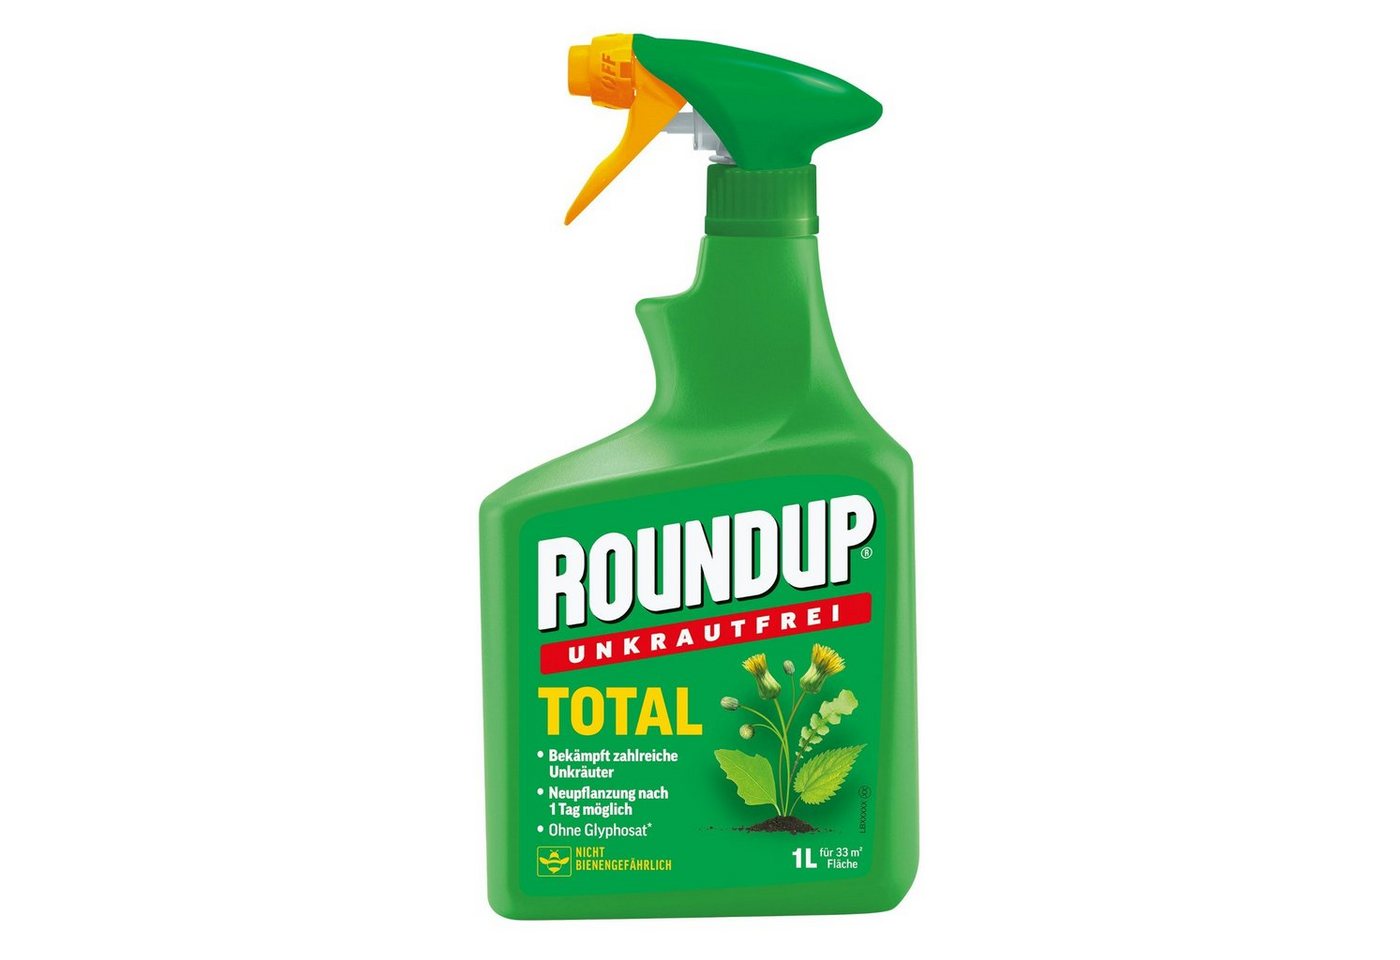 ROUNDUP Unkrautbekämpfungsmittel Unkrautfrei Total - 1 Liter von ROUNDUP